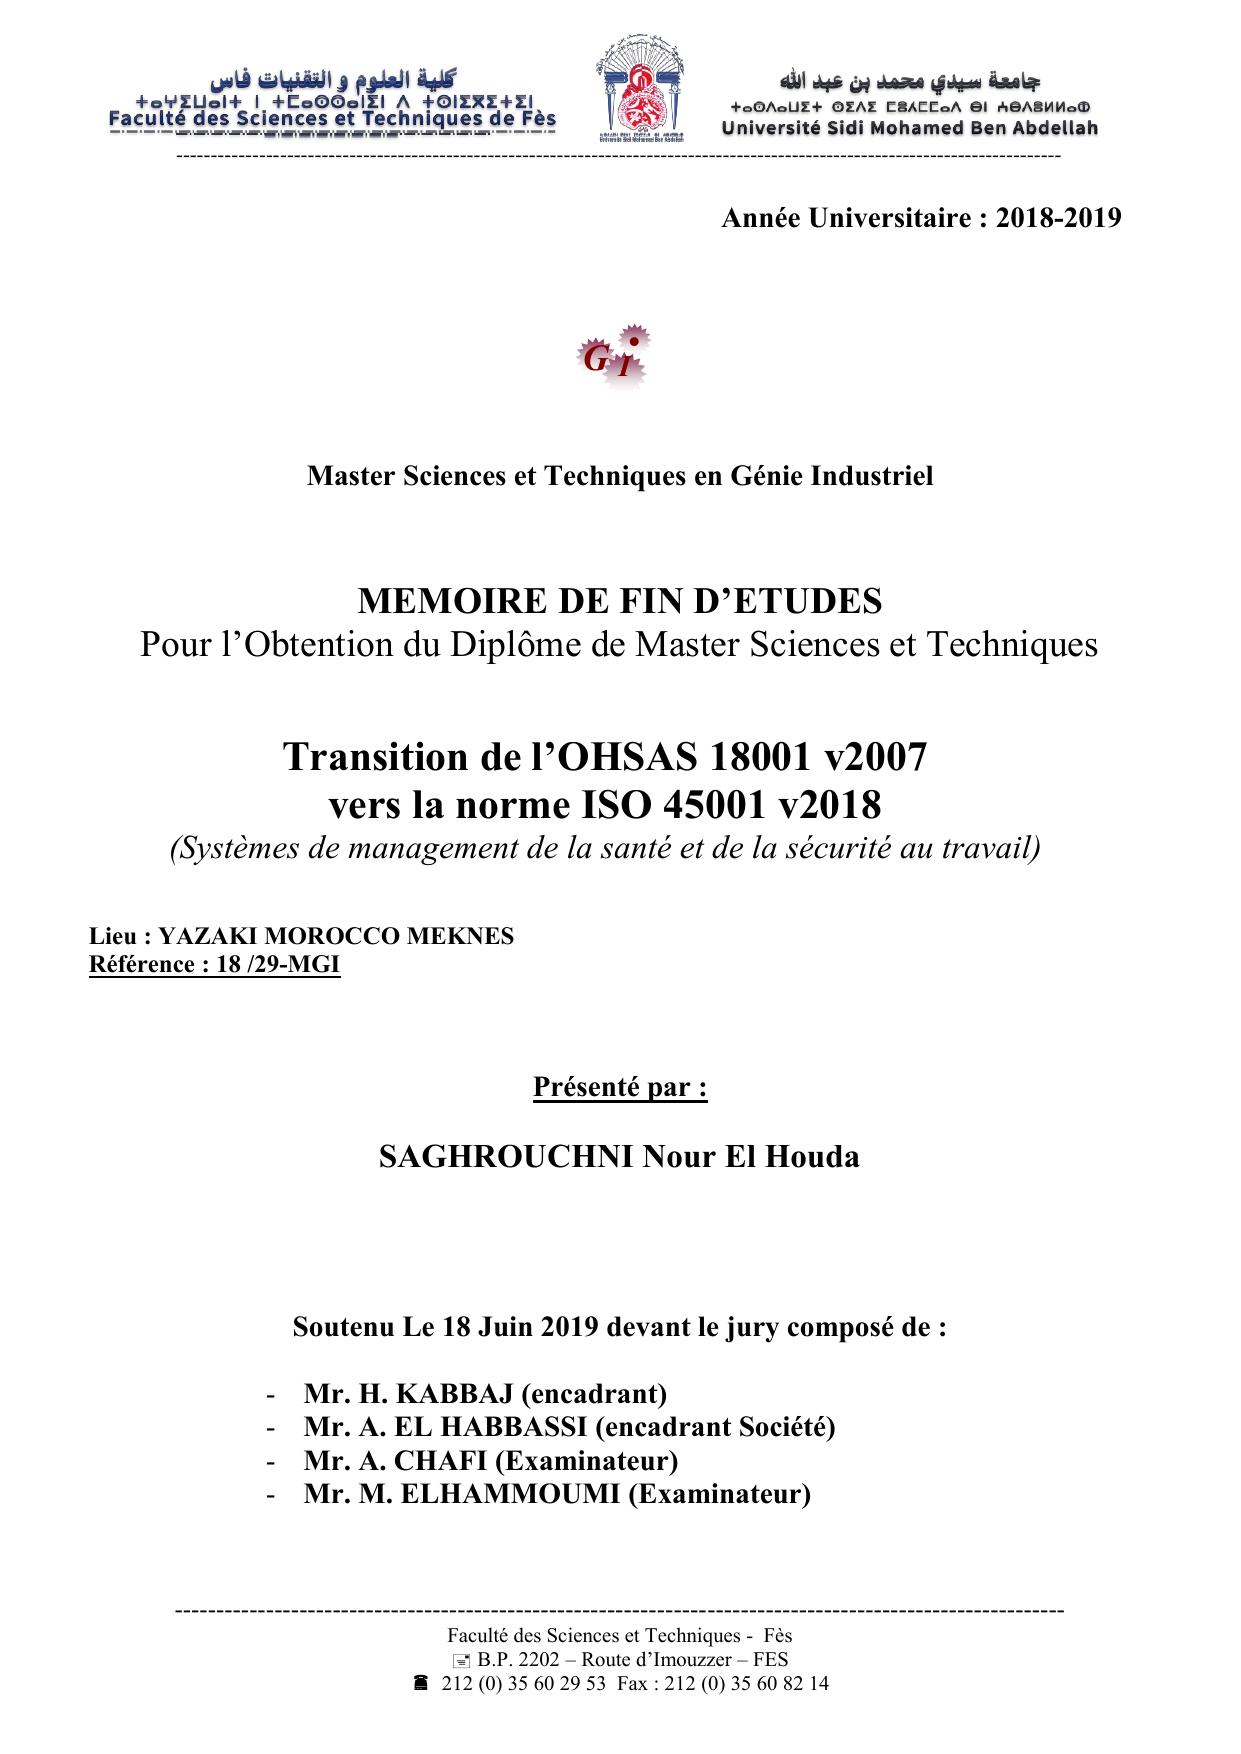 Transition de l’OHSAS 18001 v2007 vers la norme ISO 45001 v2018